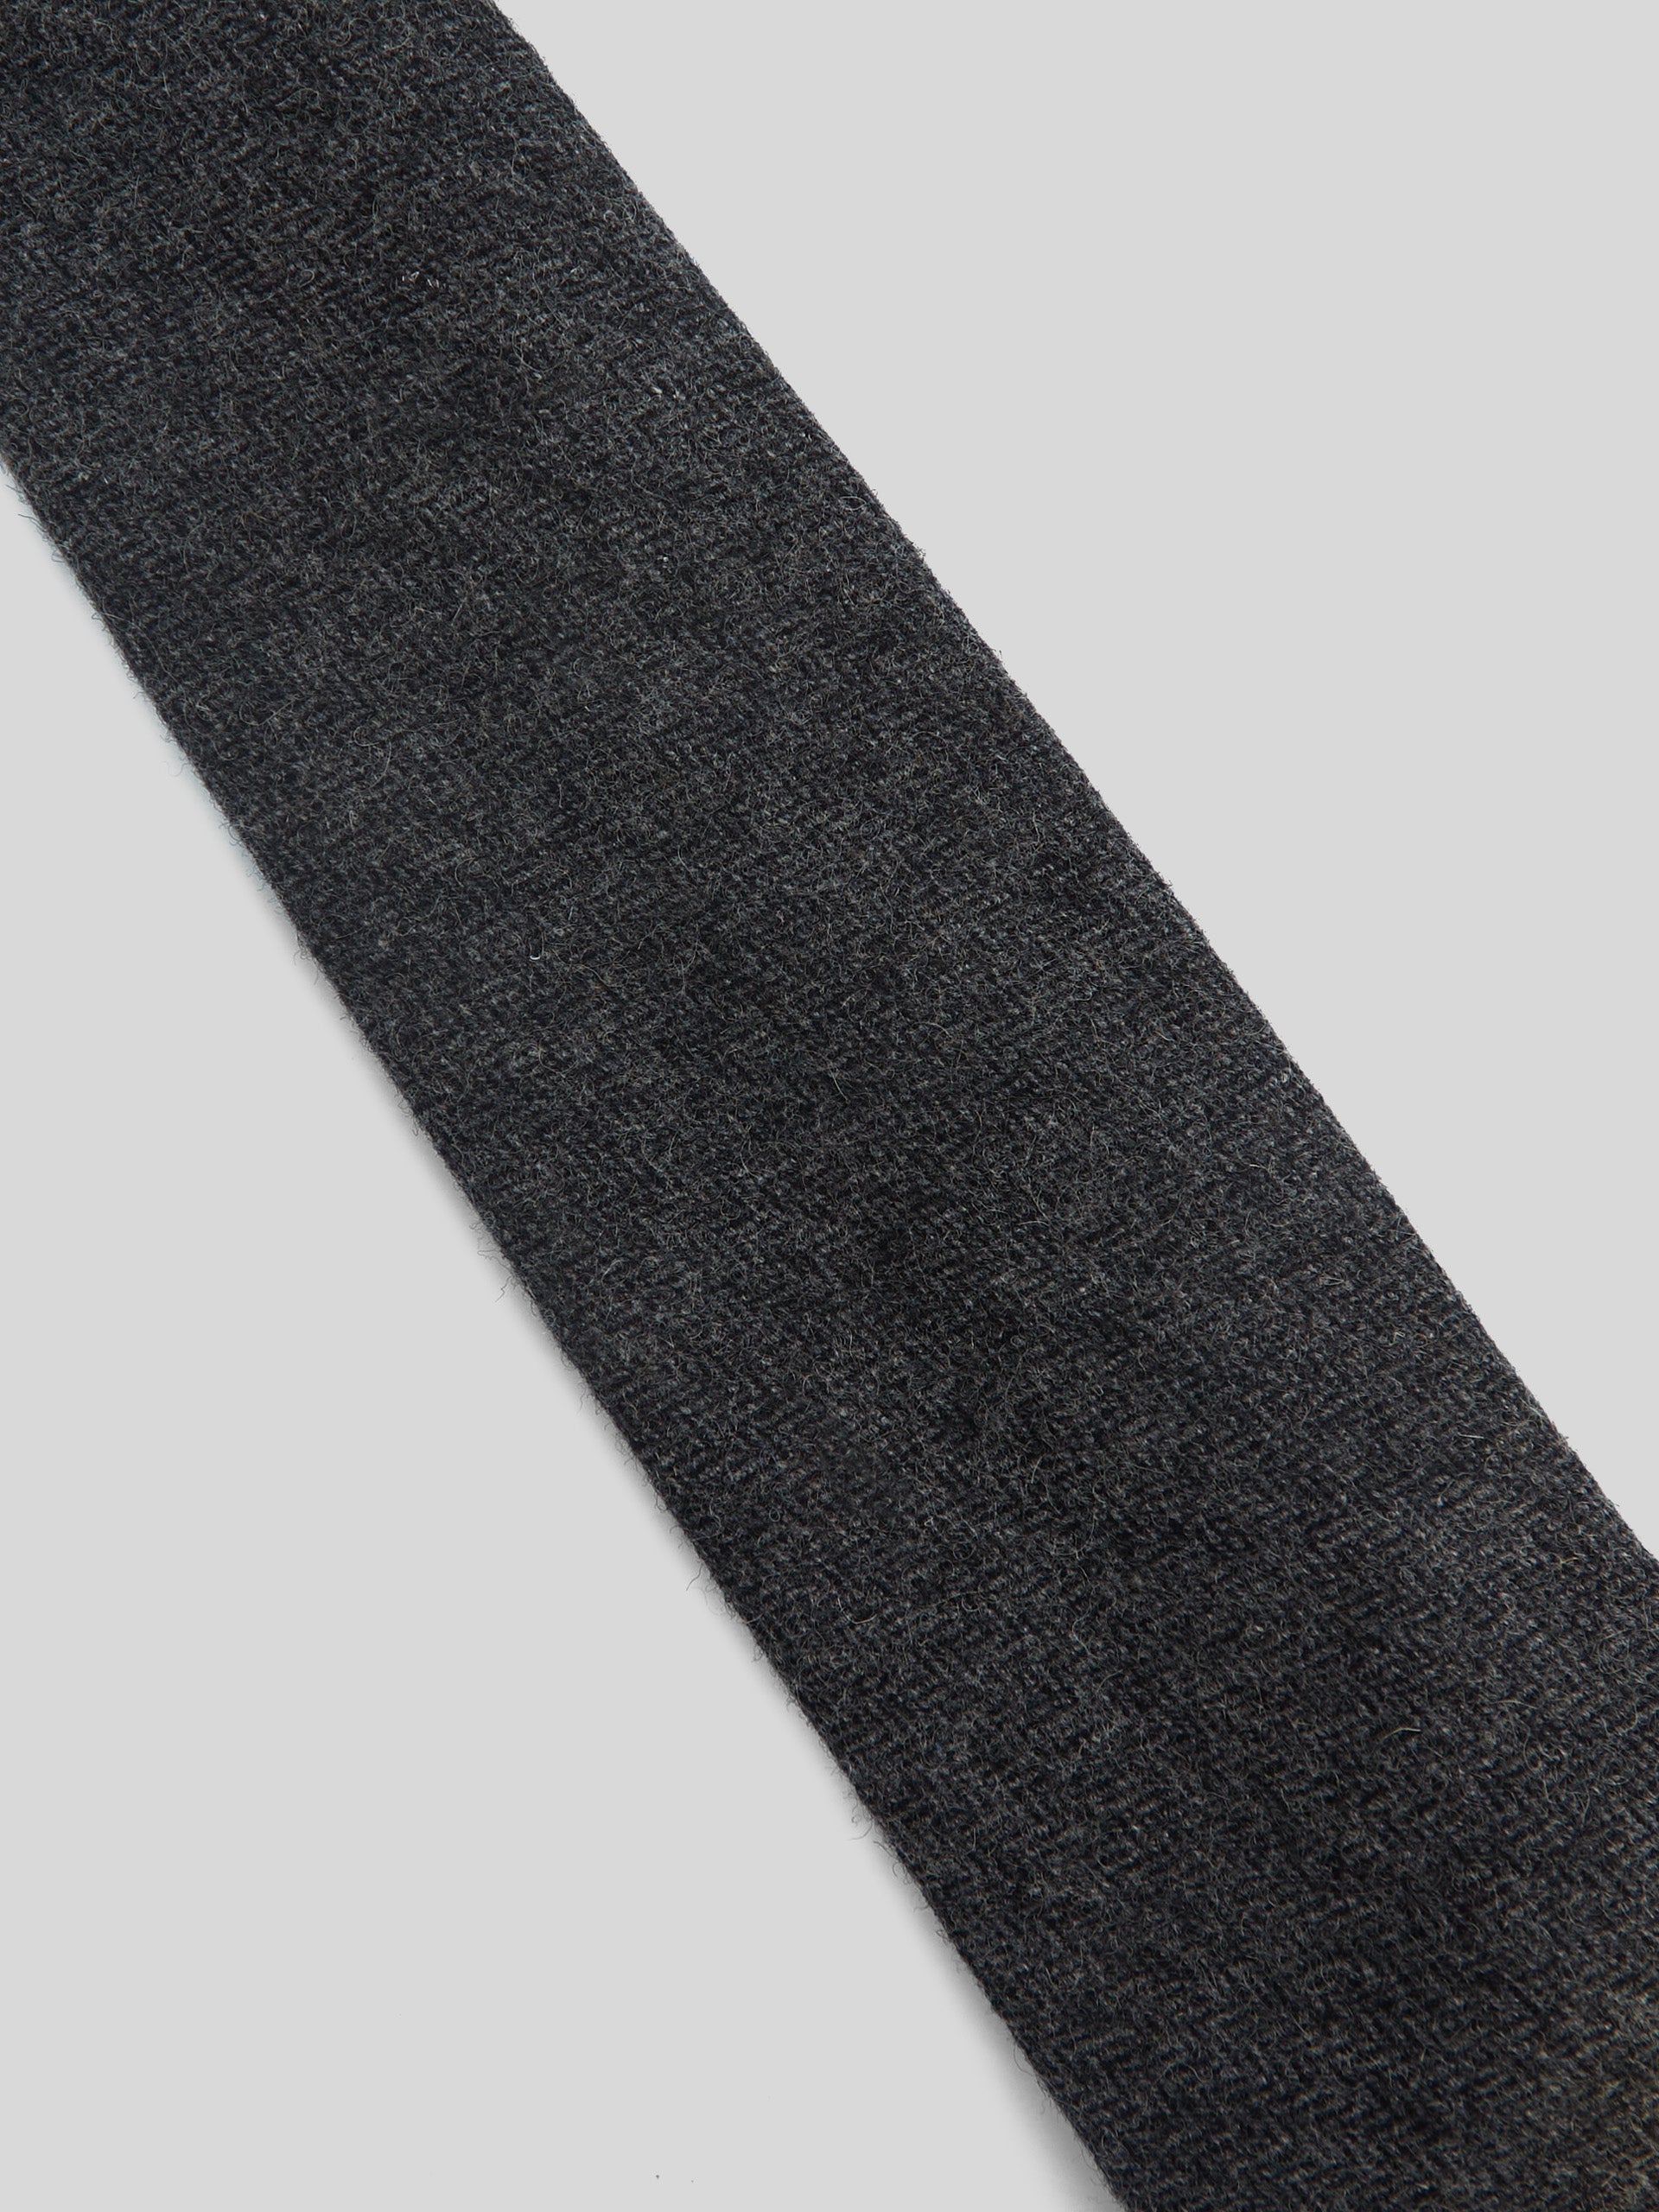 Corbata clasica espiga gris oscuro